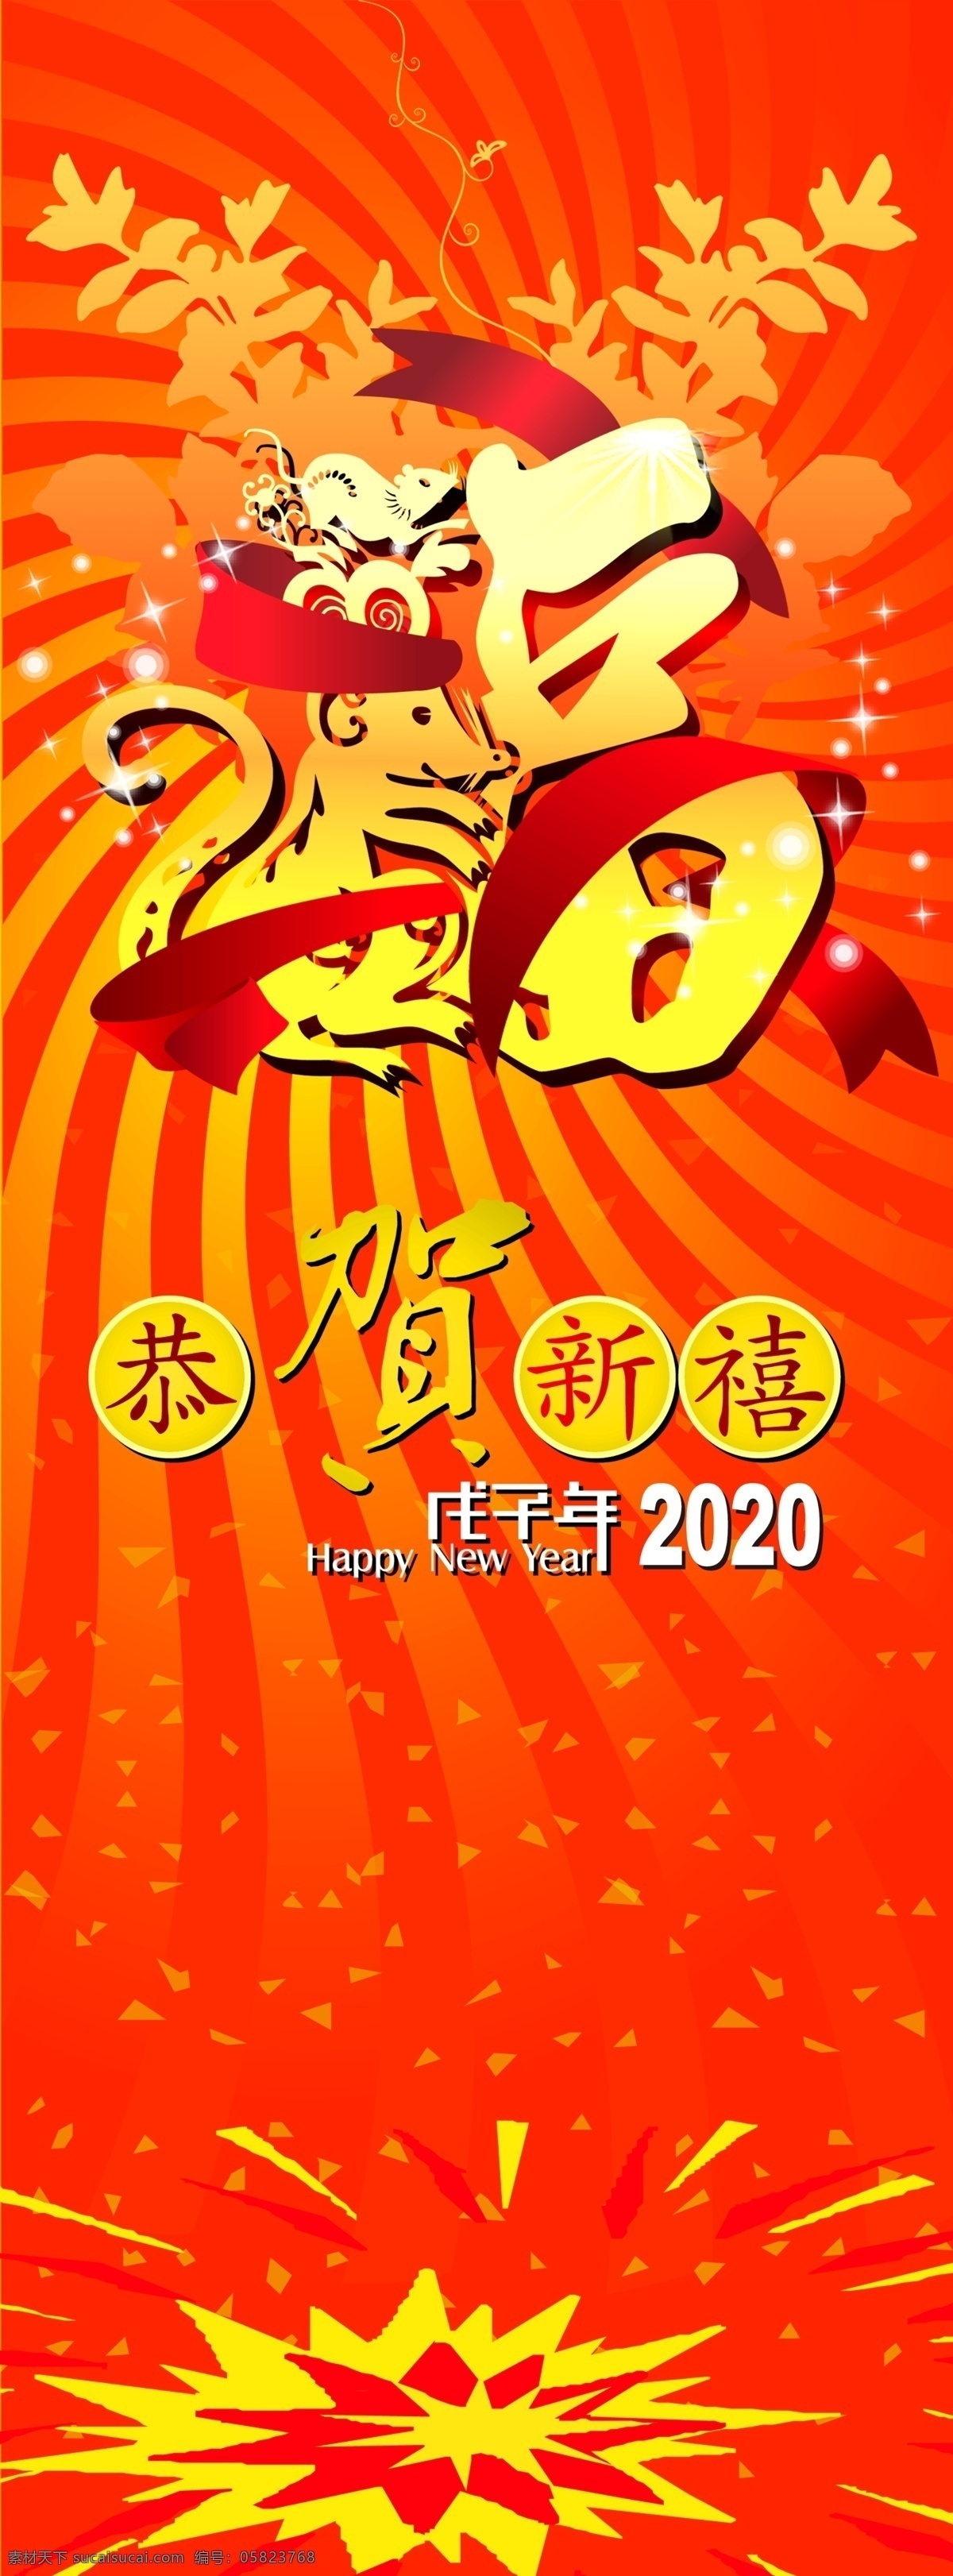 鼠年 贺年 x 展架 海报 布条 恭贺 新禧 2020年 新春